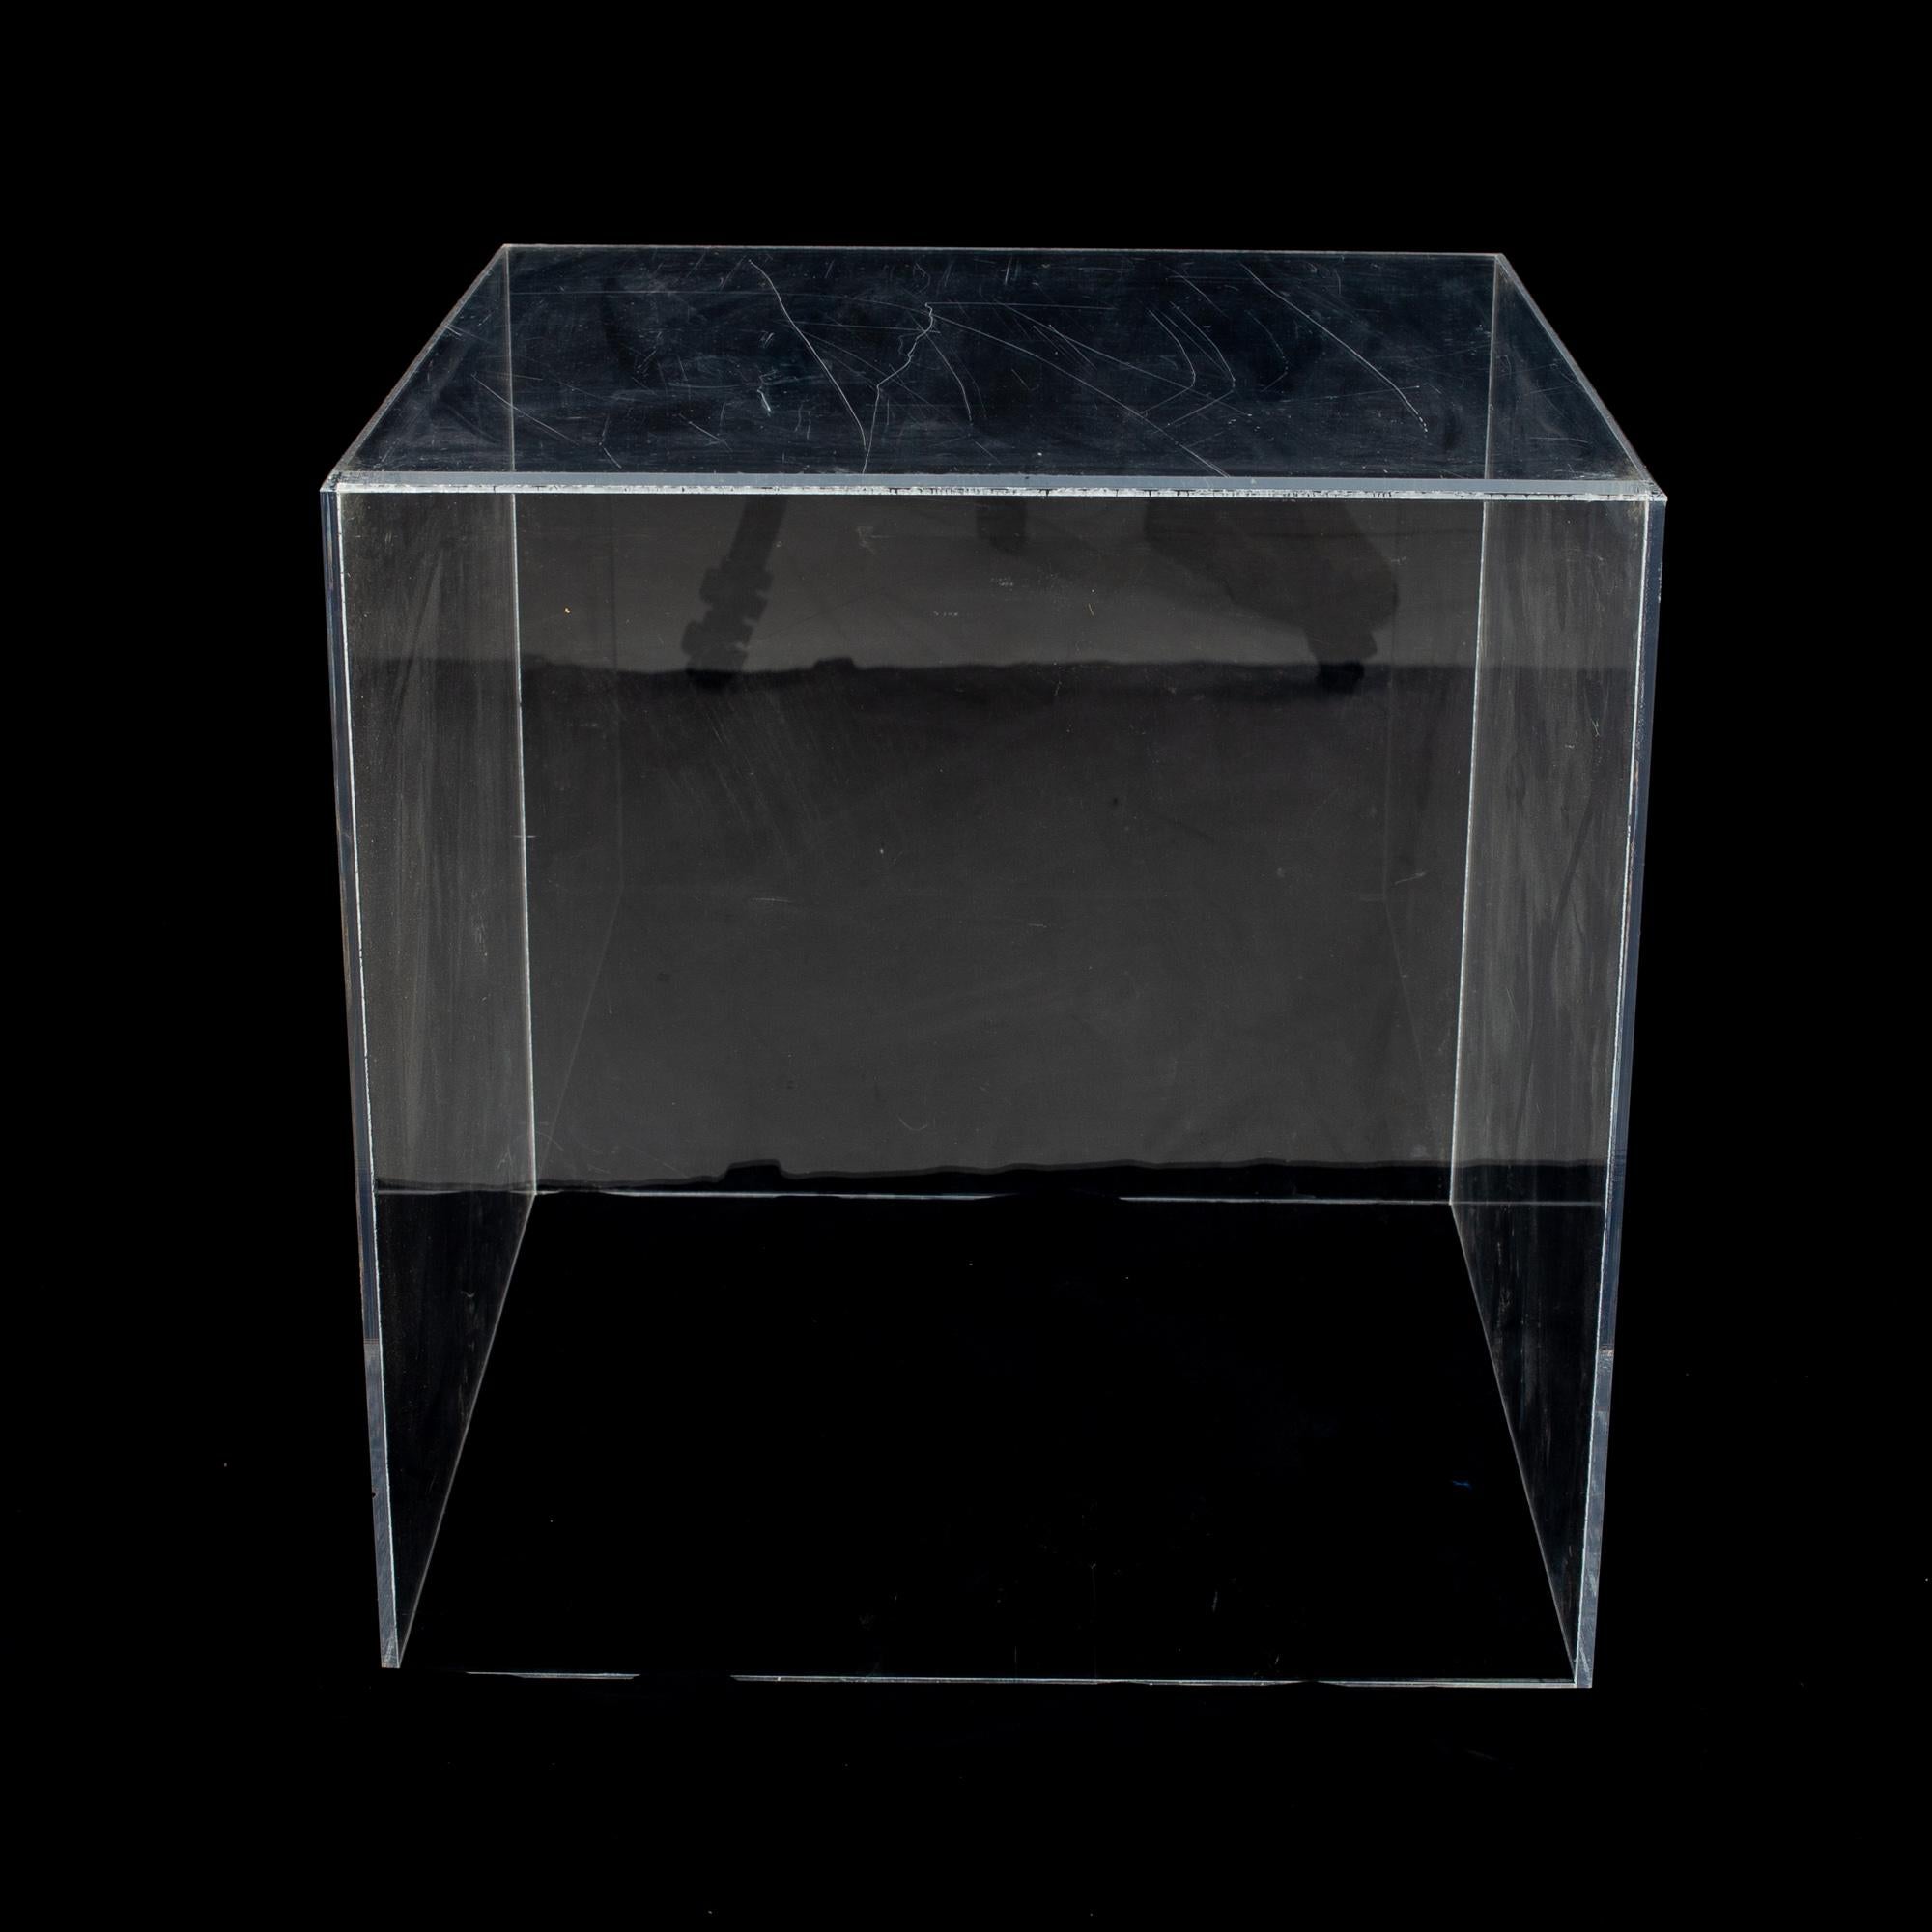 Table d'appoint cubique en acrylique transparent du milieu du siècle.

La table d'appoint mesure : 18 pouces de largeur x 18 pouces de profondeur x 18.25 pouces de hauteur

Tous les meubles peuvent être obtenus dans ce que nous appelons un état